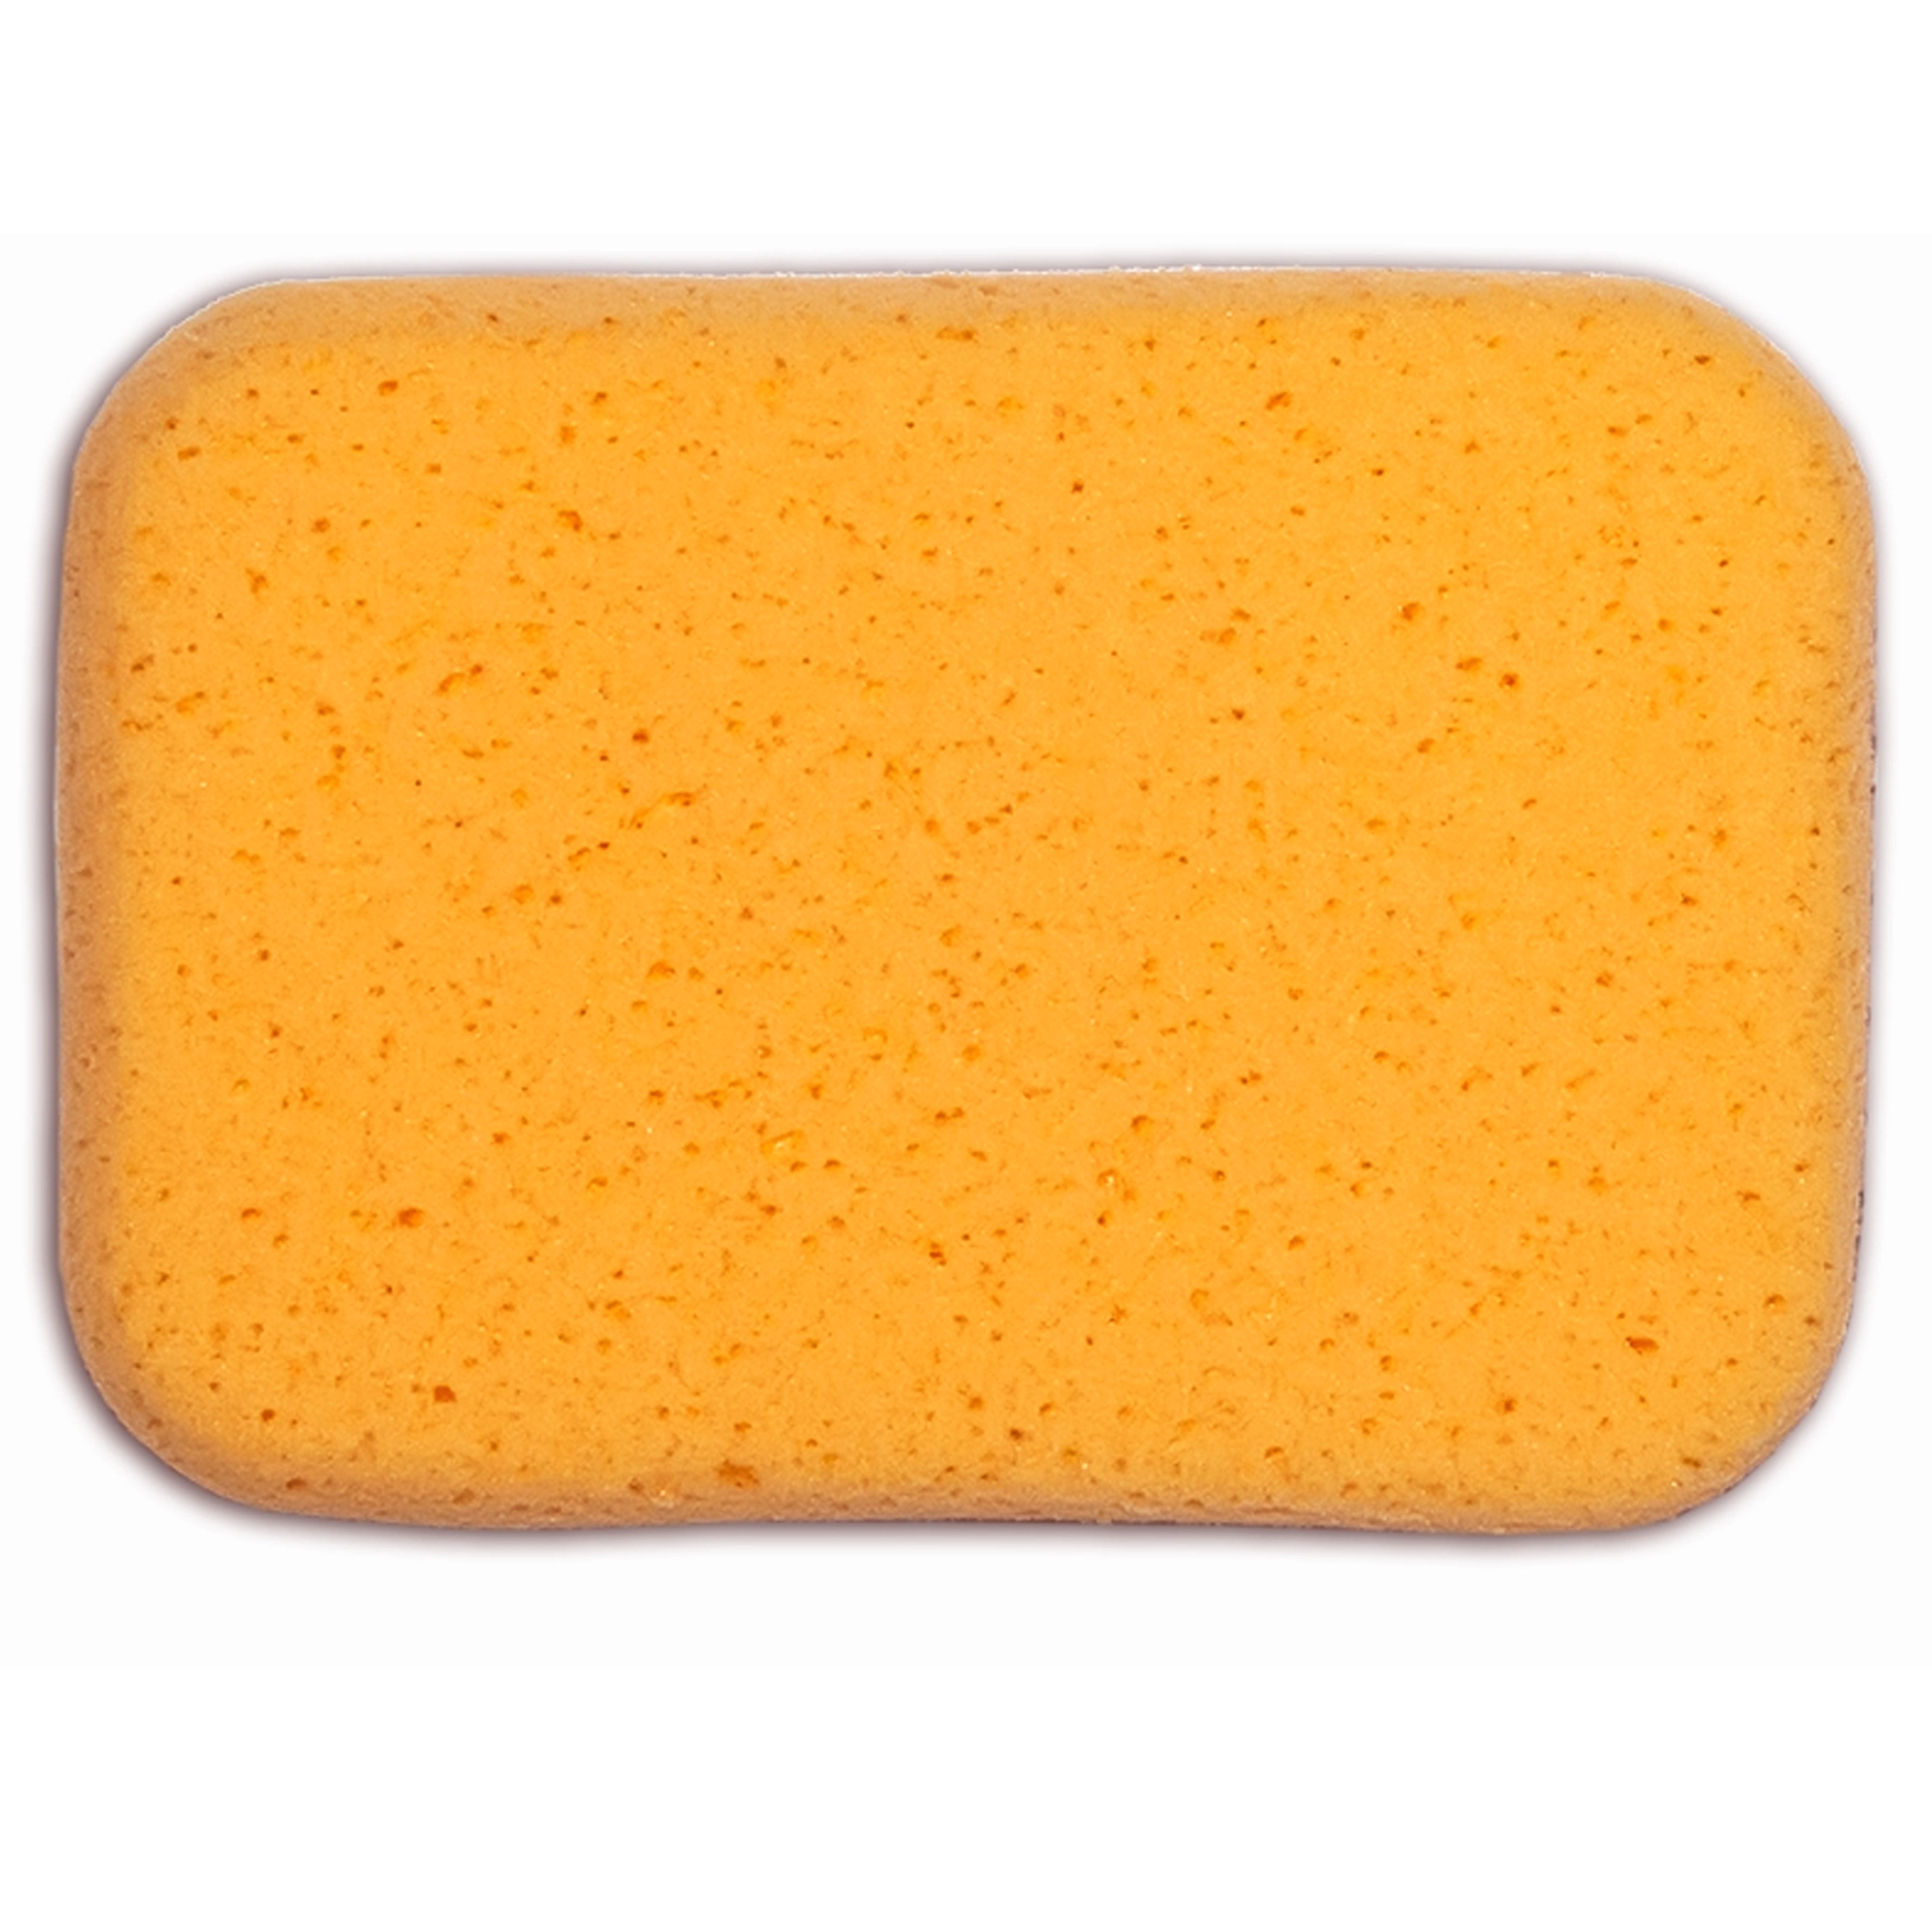 Generic Faxco 10 Pcs Car Wash Sponges, Car Cleaning Large Sponges